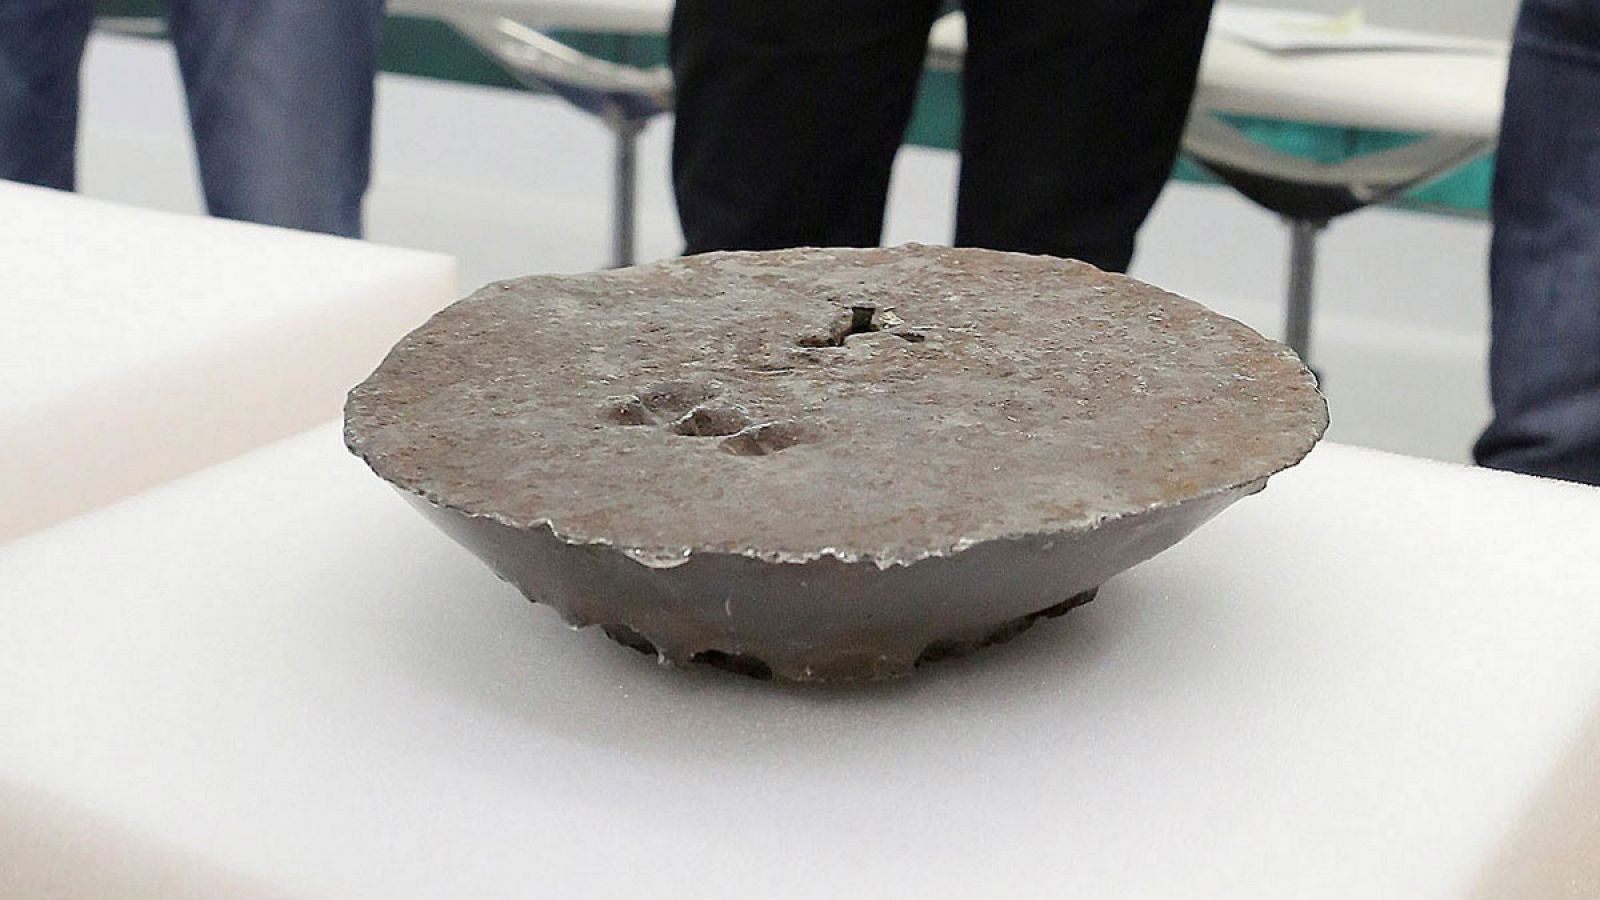 El lingote hallado tiene forma semiesférica y pesa ocho kilos.